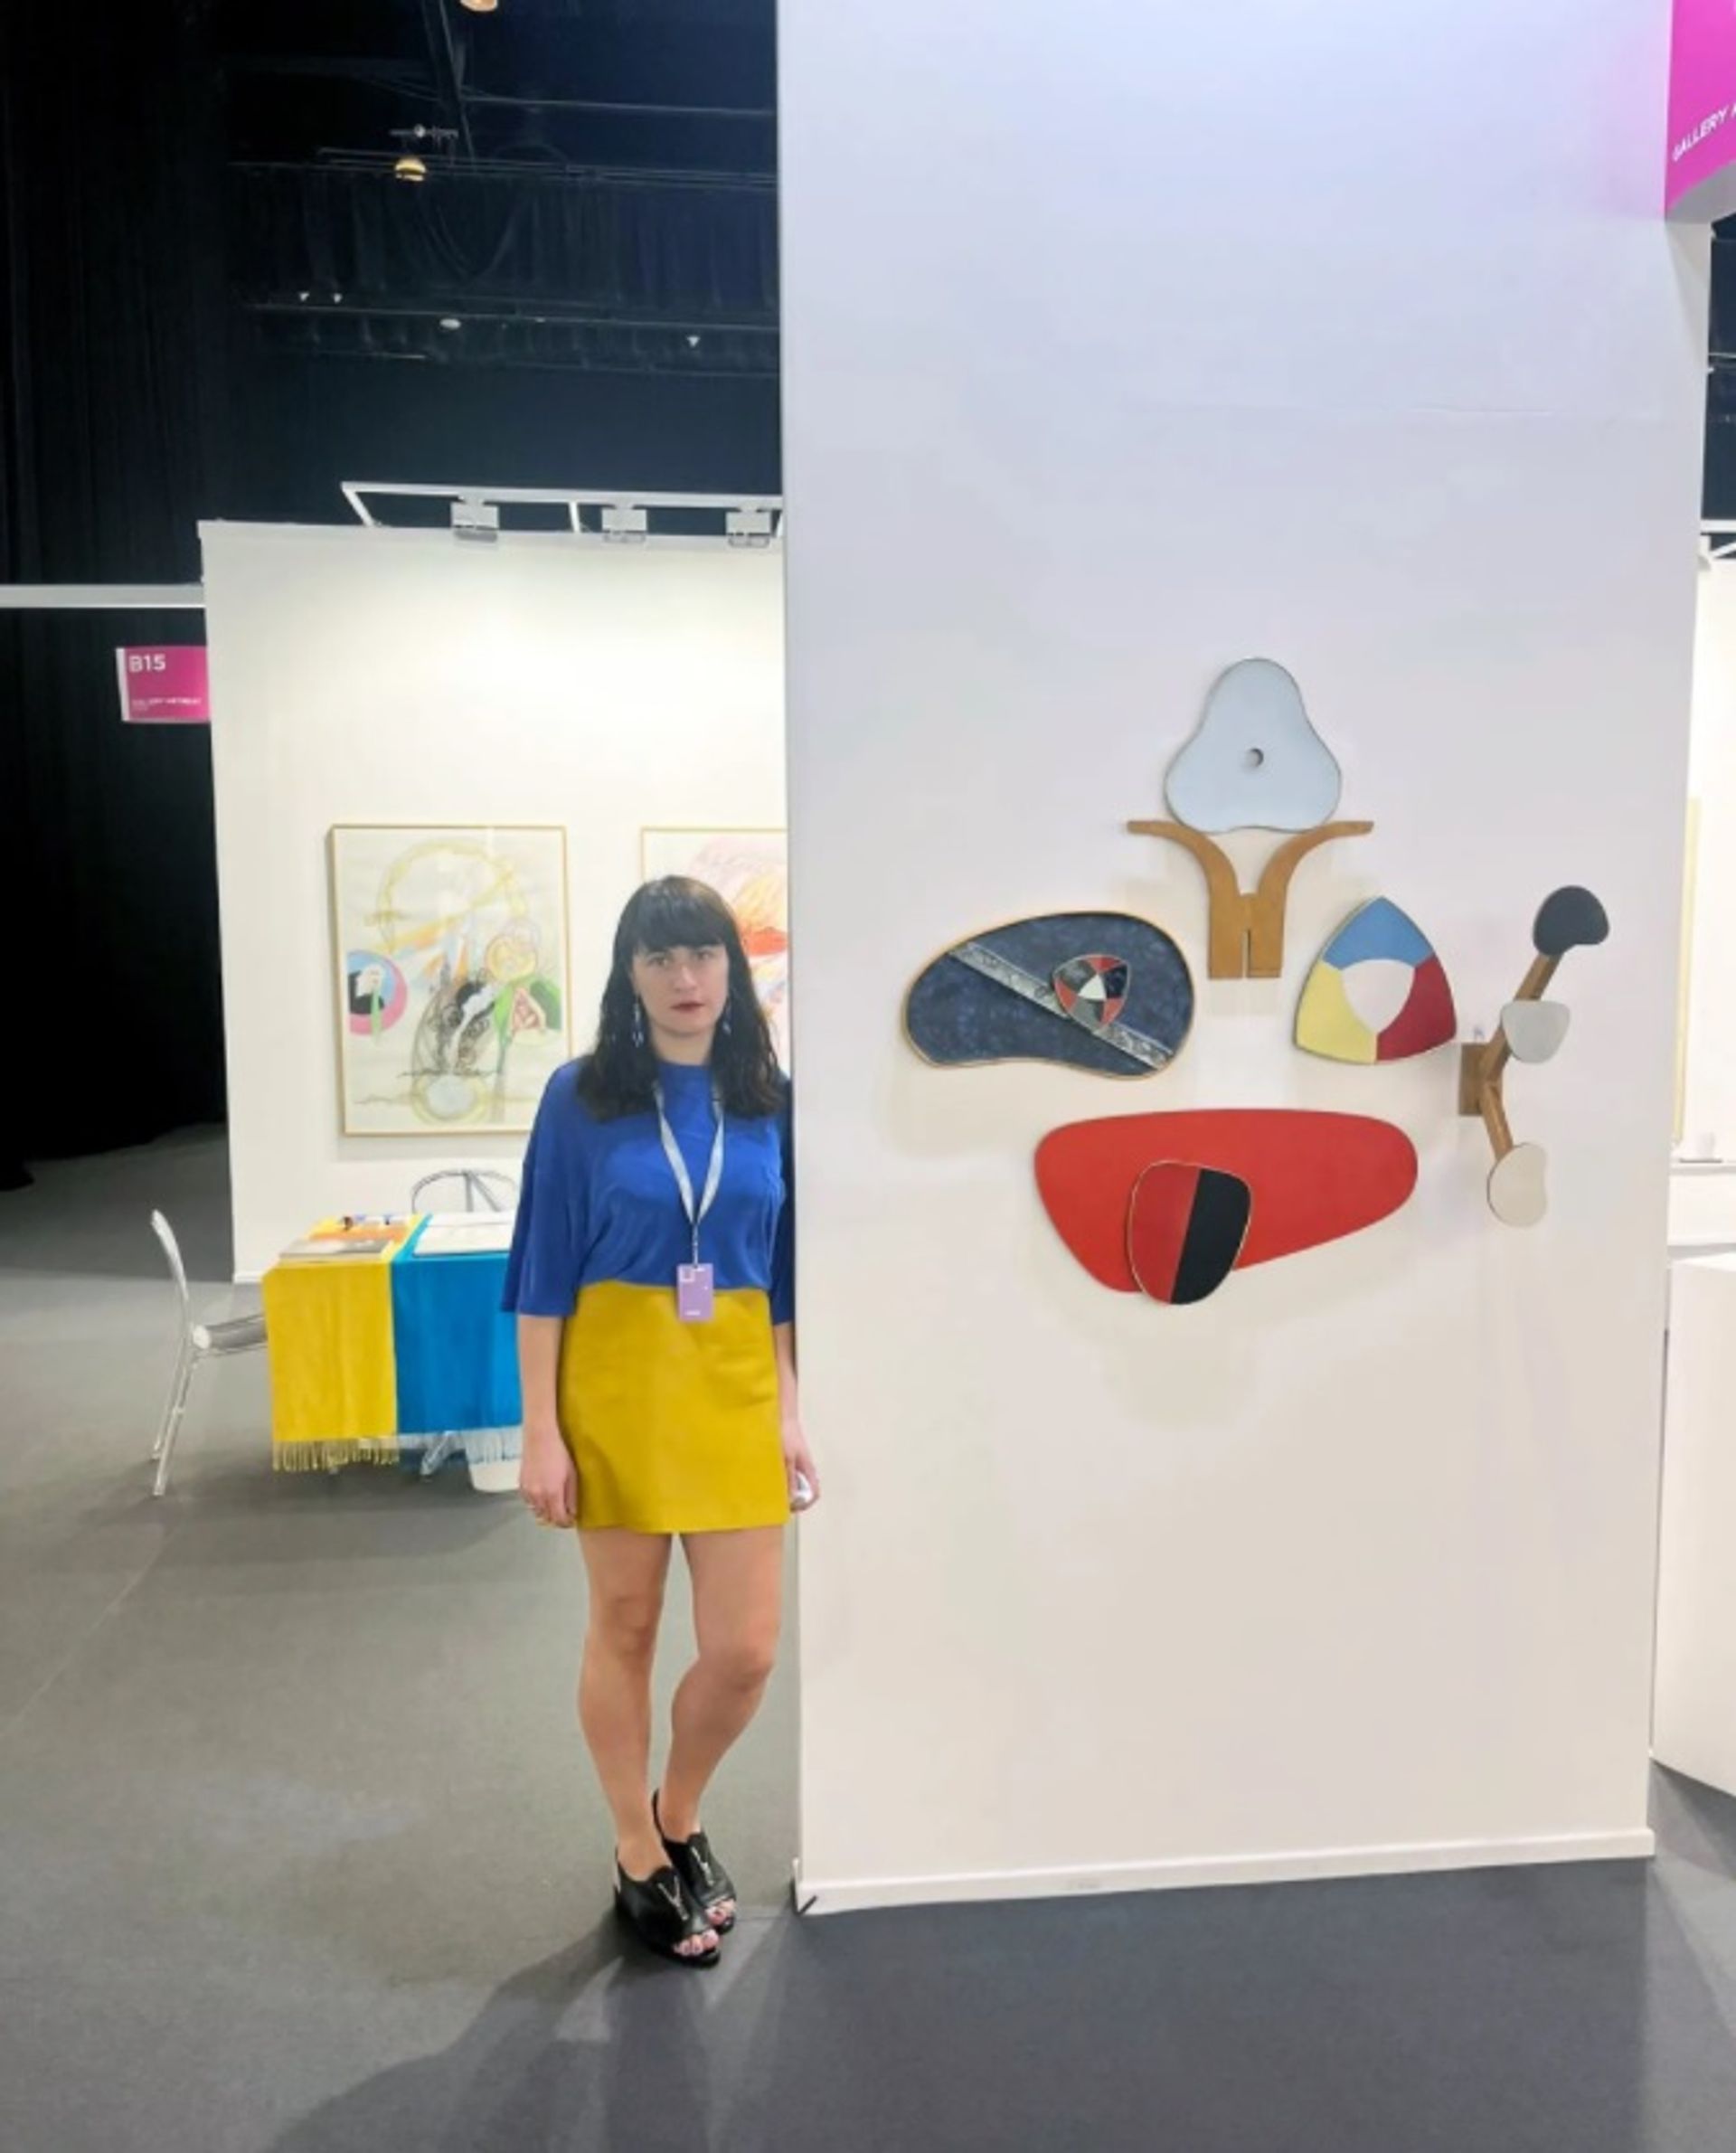 נתיה בוקיה, מייסדת שותפה של Gallery Artbeat, שבסיסה בטביליסי, גאורגיה, כיסתה את שולחן הדוכן שלה בדגל אוקראיני והתלבשה בצבעי הדגל לתצוגה המקדימה של ארט דובאי.

באדיבות Gallery Artbeat